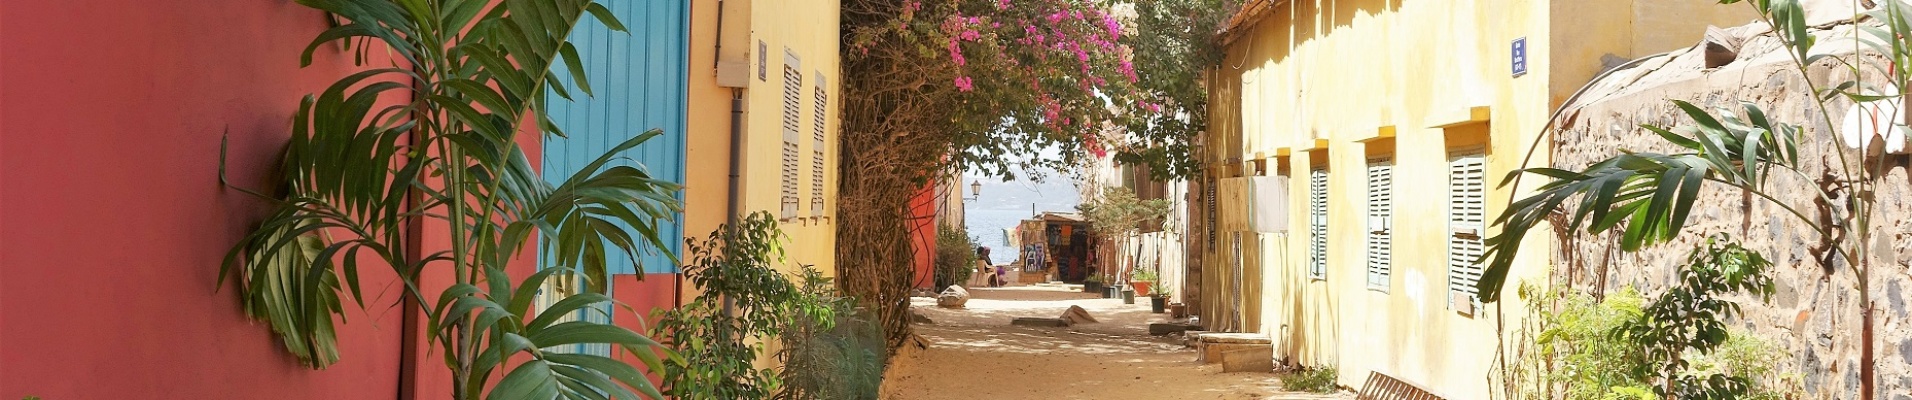 Rue de l'île Gorée aux maisons colorées